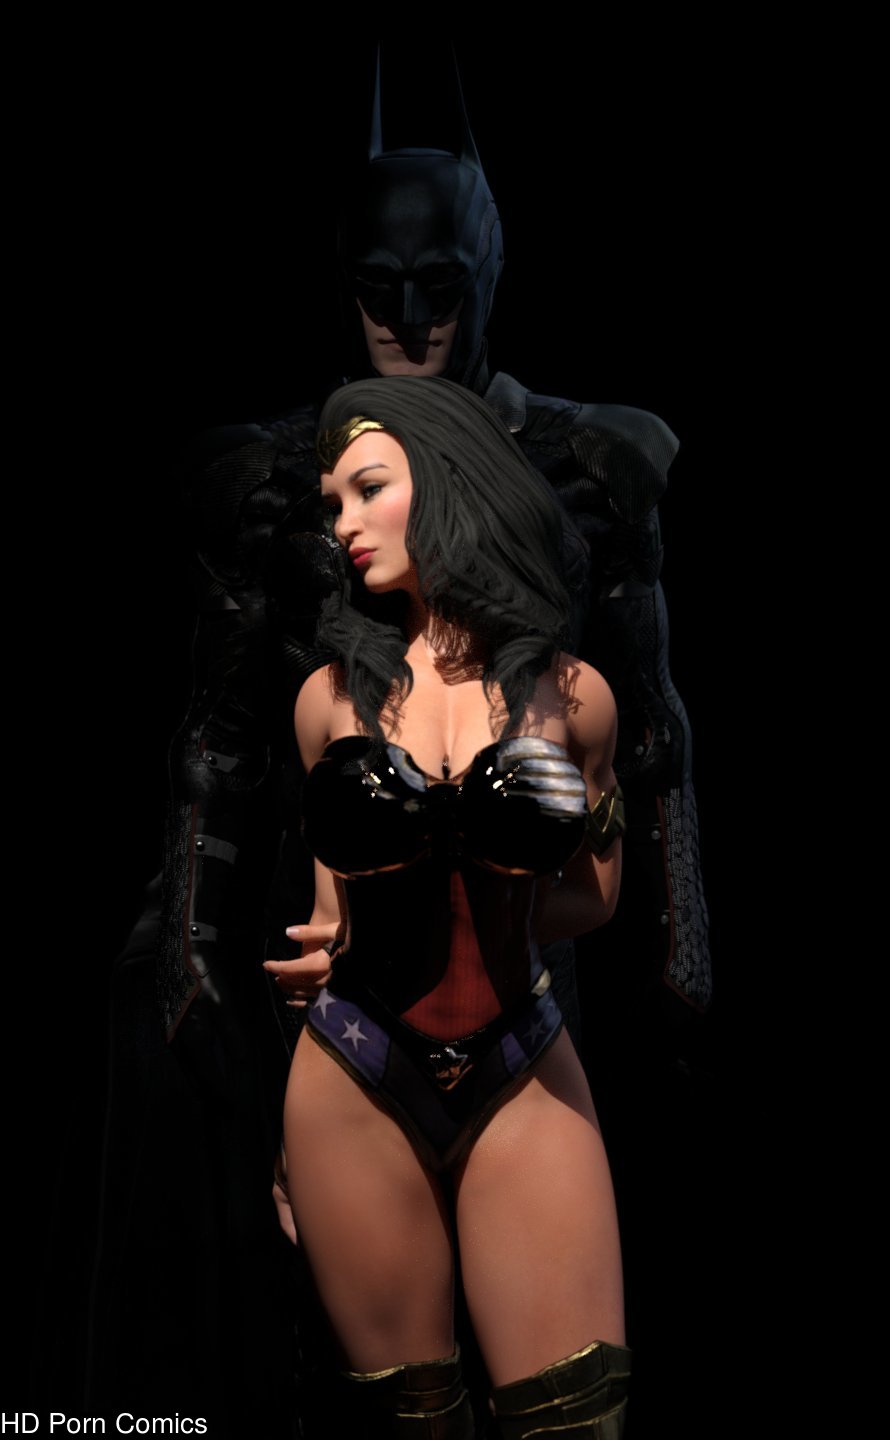 Batman And Wonder Woman Porn - Wonder Woman & Batman - [NookooN] comic porn - HD Porn Comics